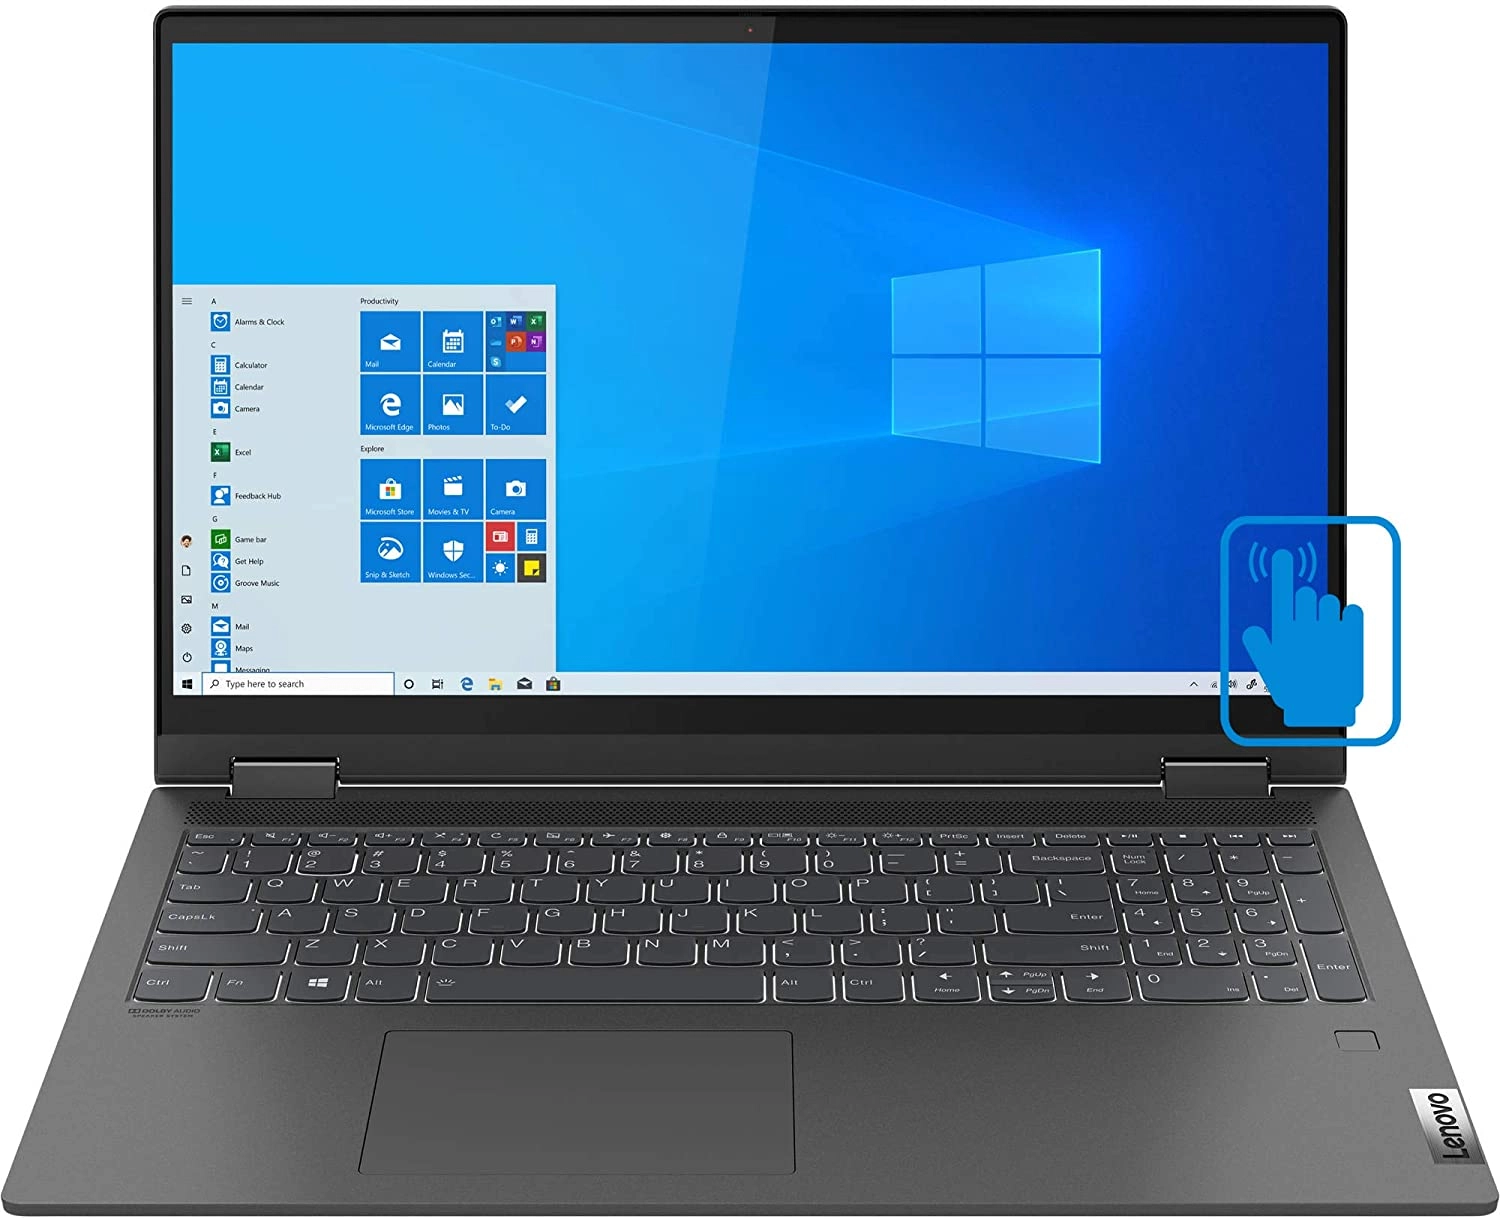 Lenovo IdeaPad Flex 5 15IIL05 81X3000VUS laptop image